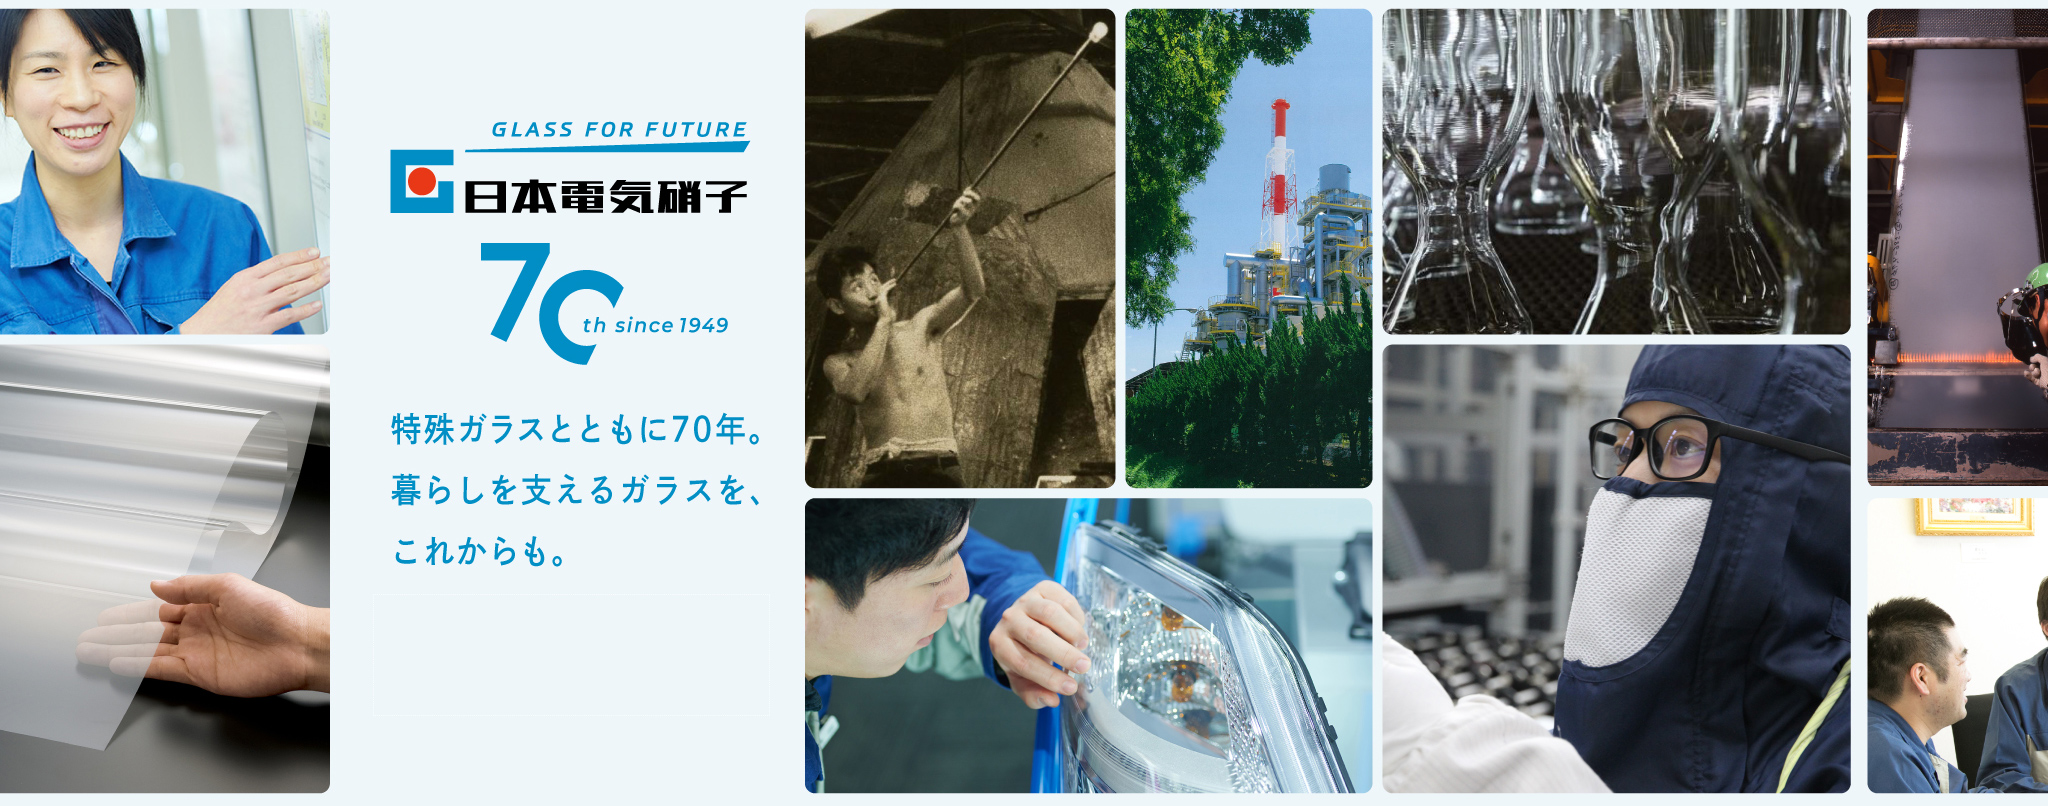 日本電気硝子70th since 1949 特殊ガラスとともに70年。暮らしを支えるガラスを、これからも。